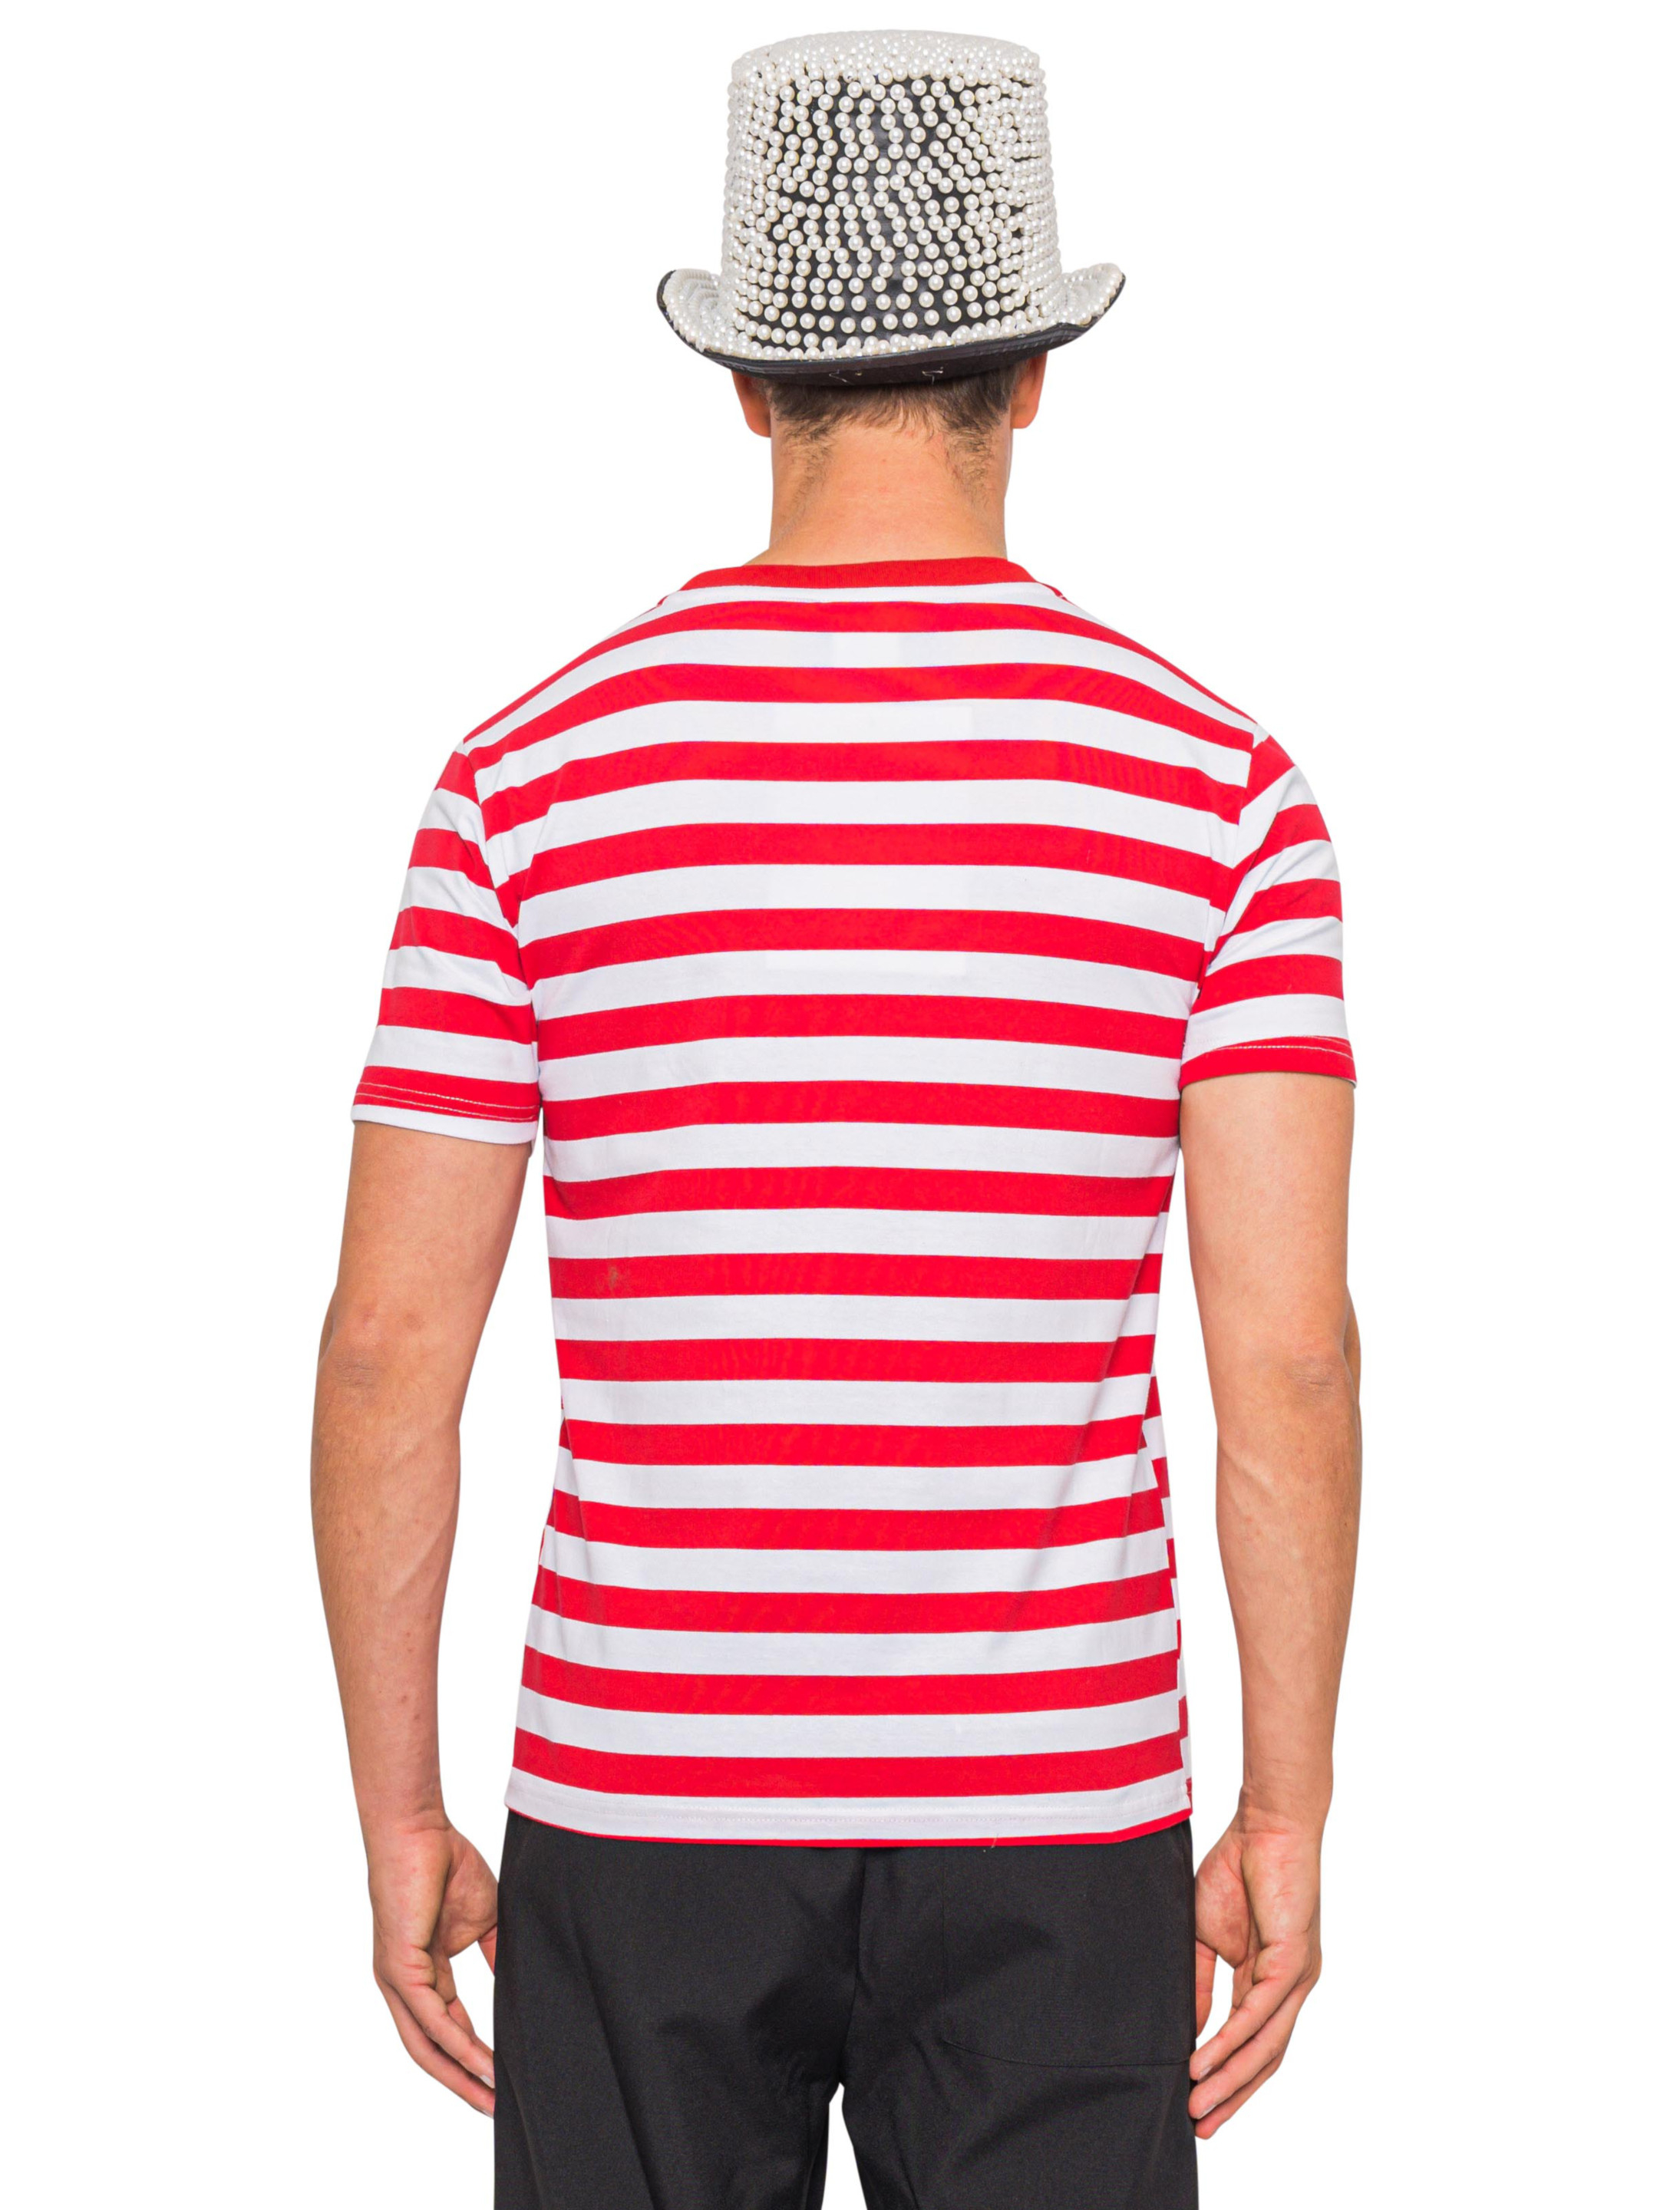 T-Shirt mit Dom Herren rot/weiß 5XL